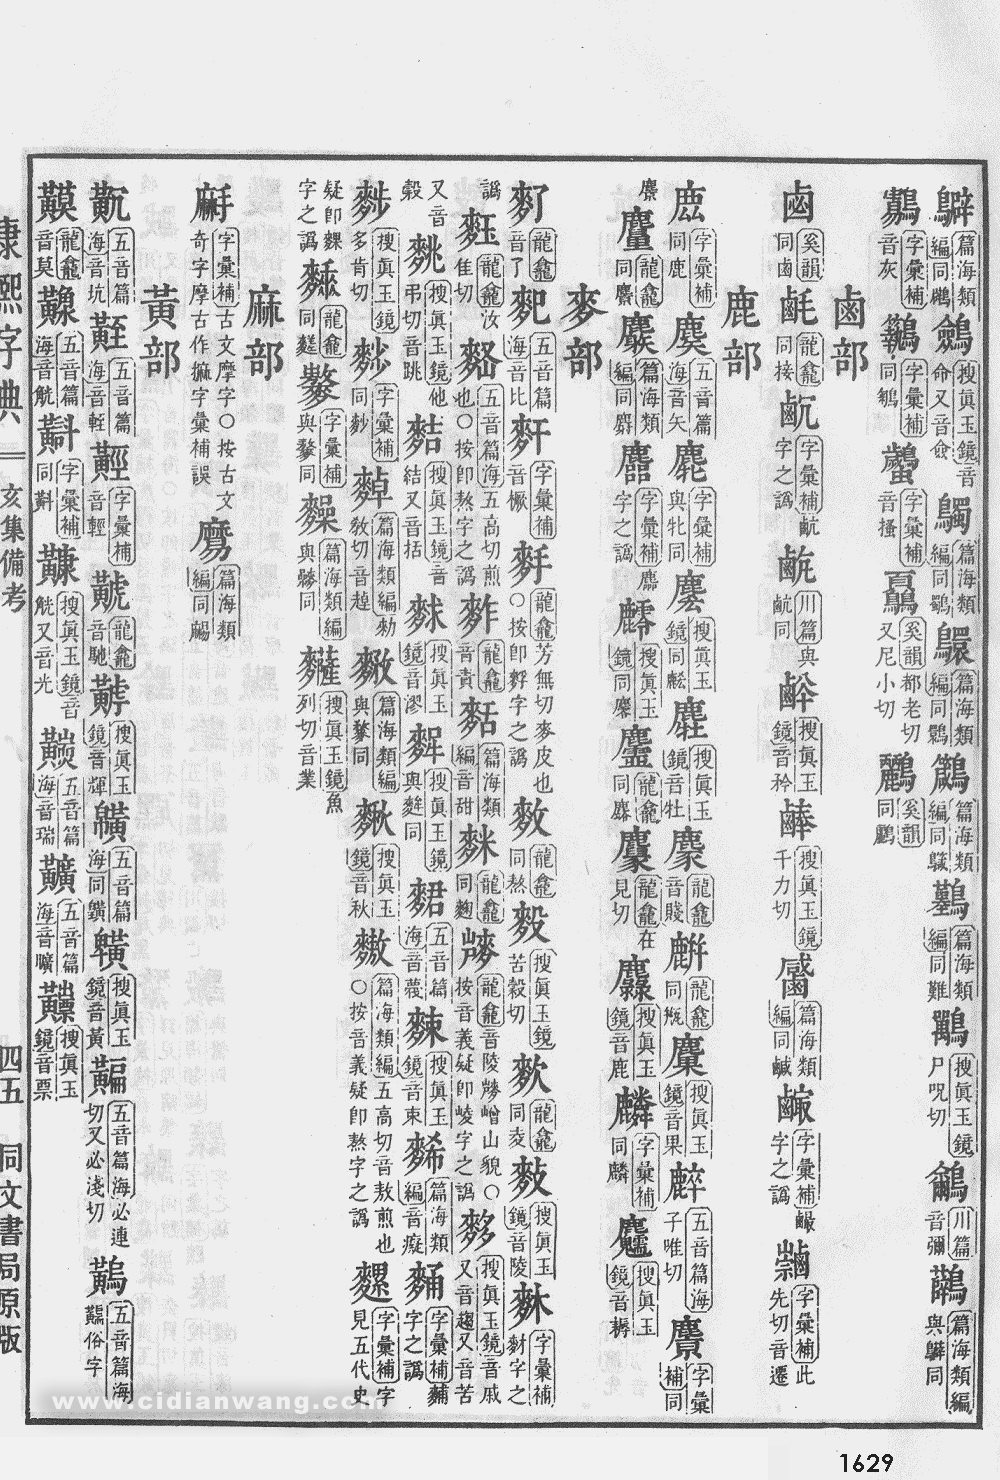 康熙字典掃描版第1629頁